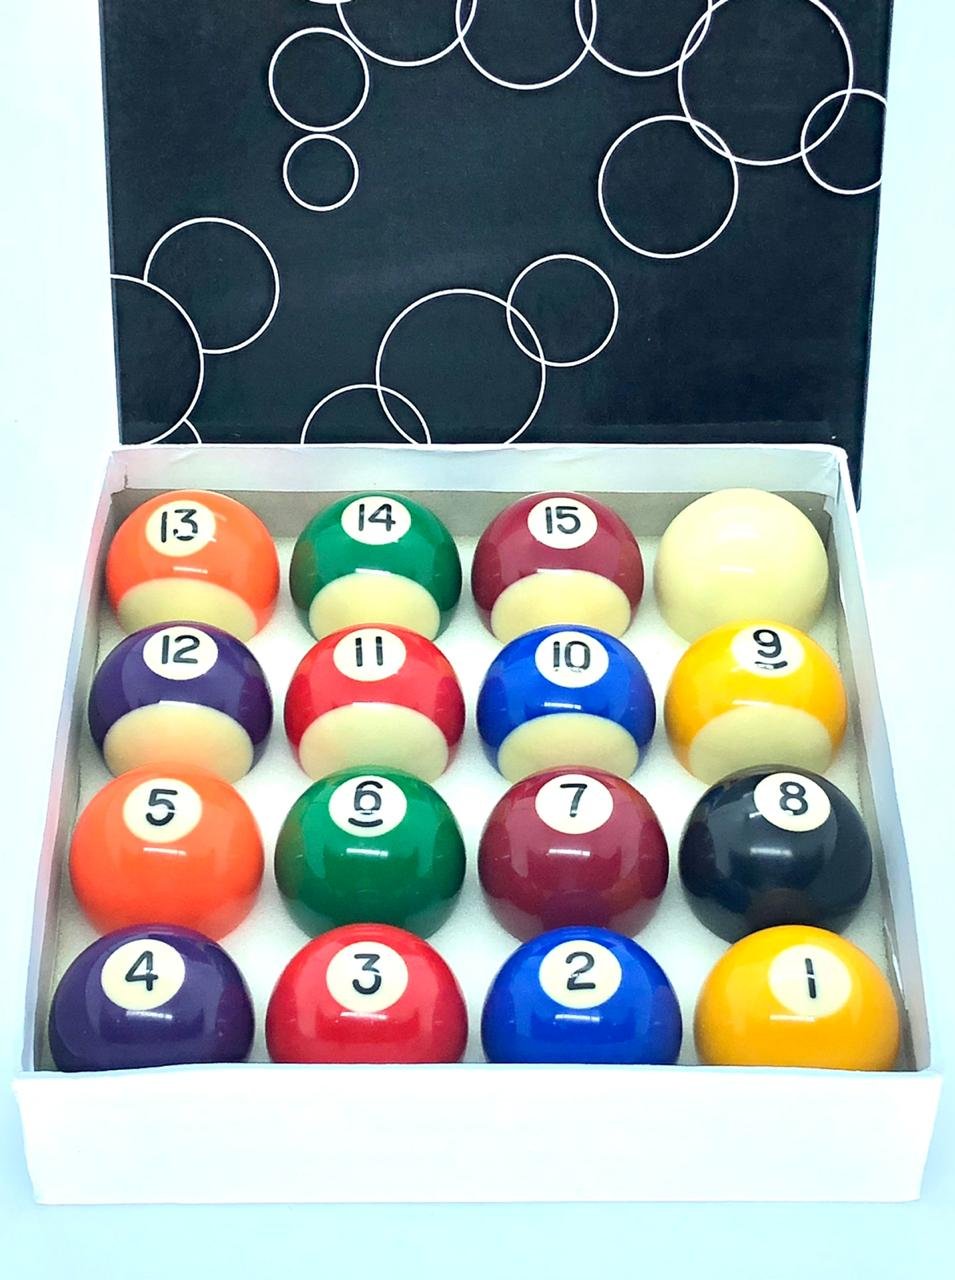 Jogo de Bola de Bilhar Sinuca de 50mm - Billiard - Bolas de Sinuca